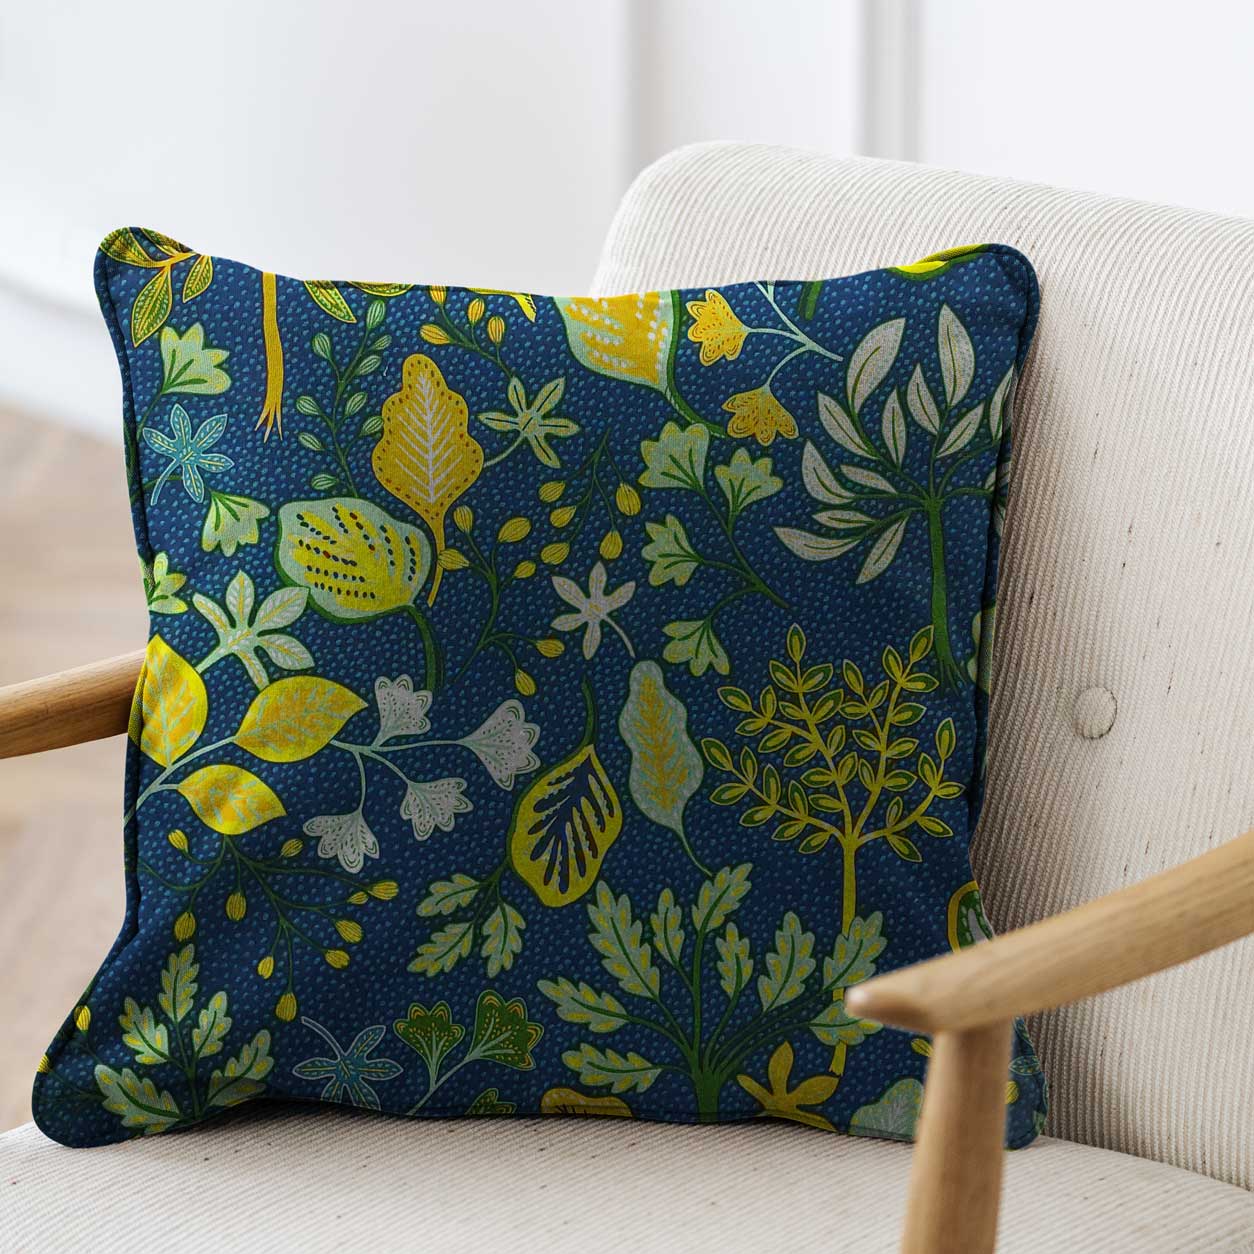 tessuto in misto cotone per cuscini con foglie colorate sfondo blu